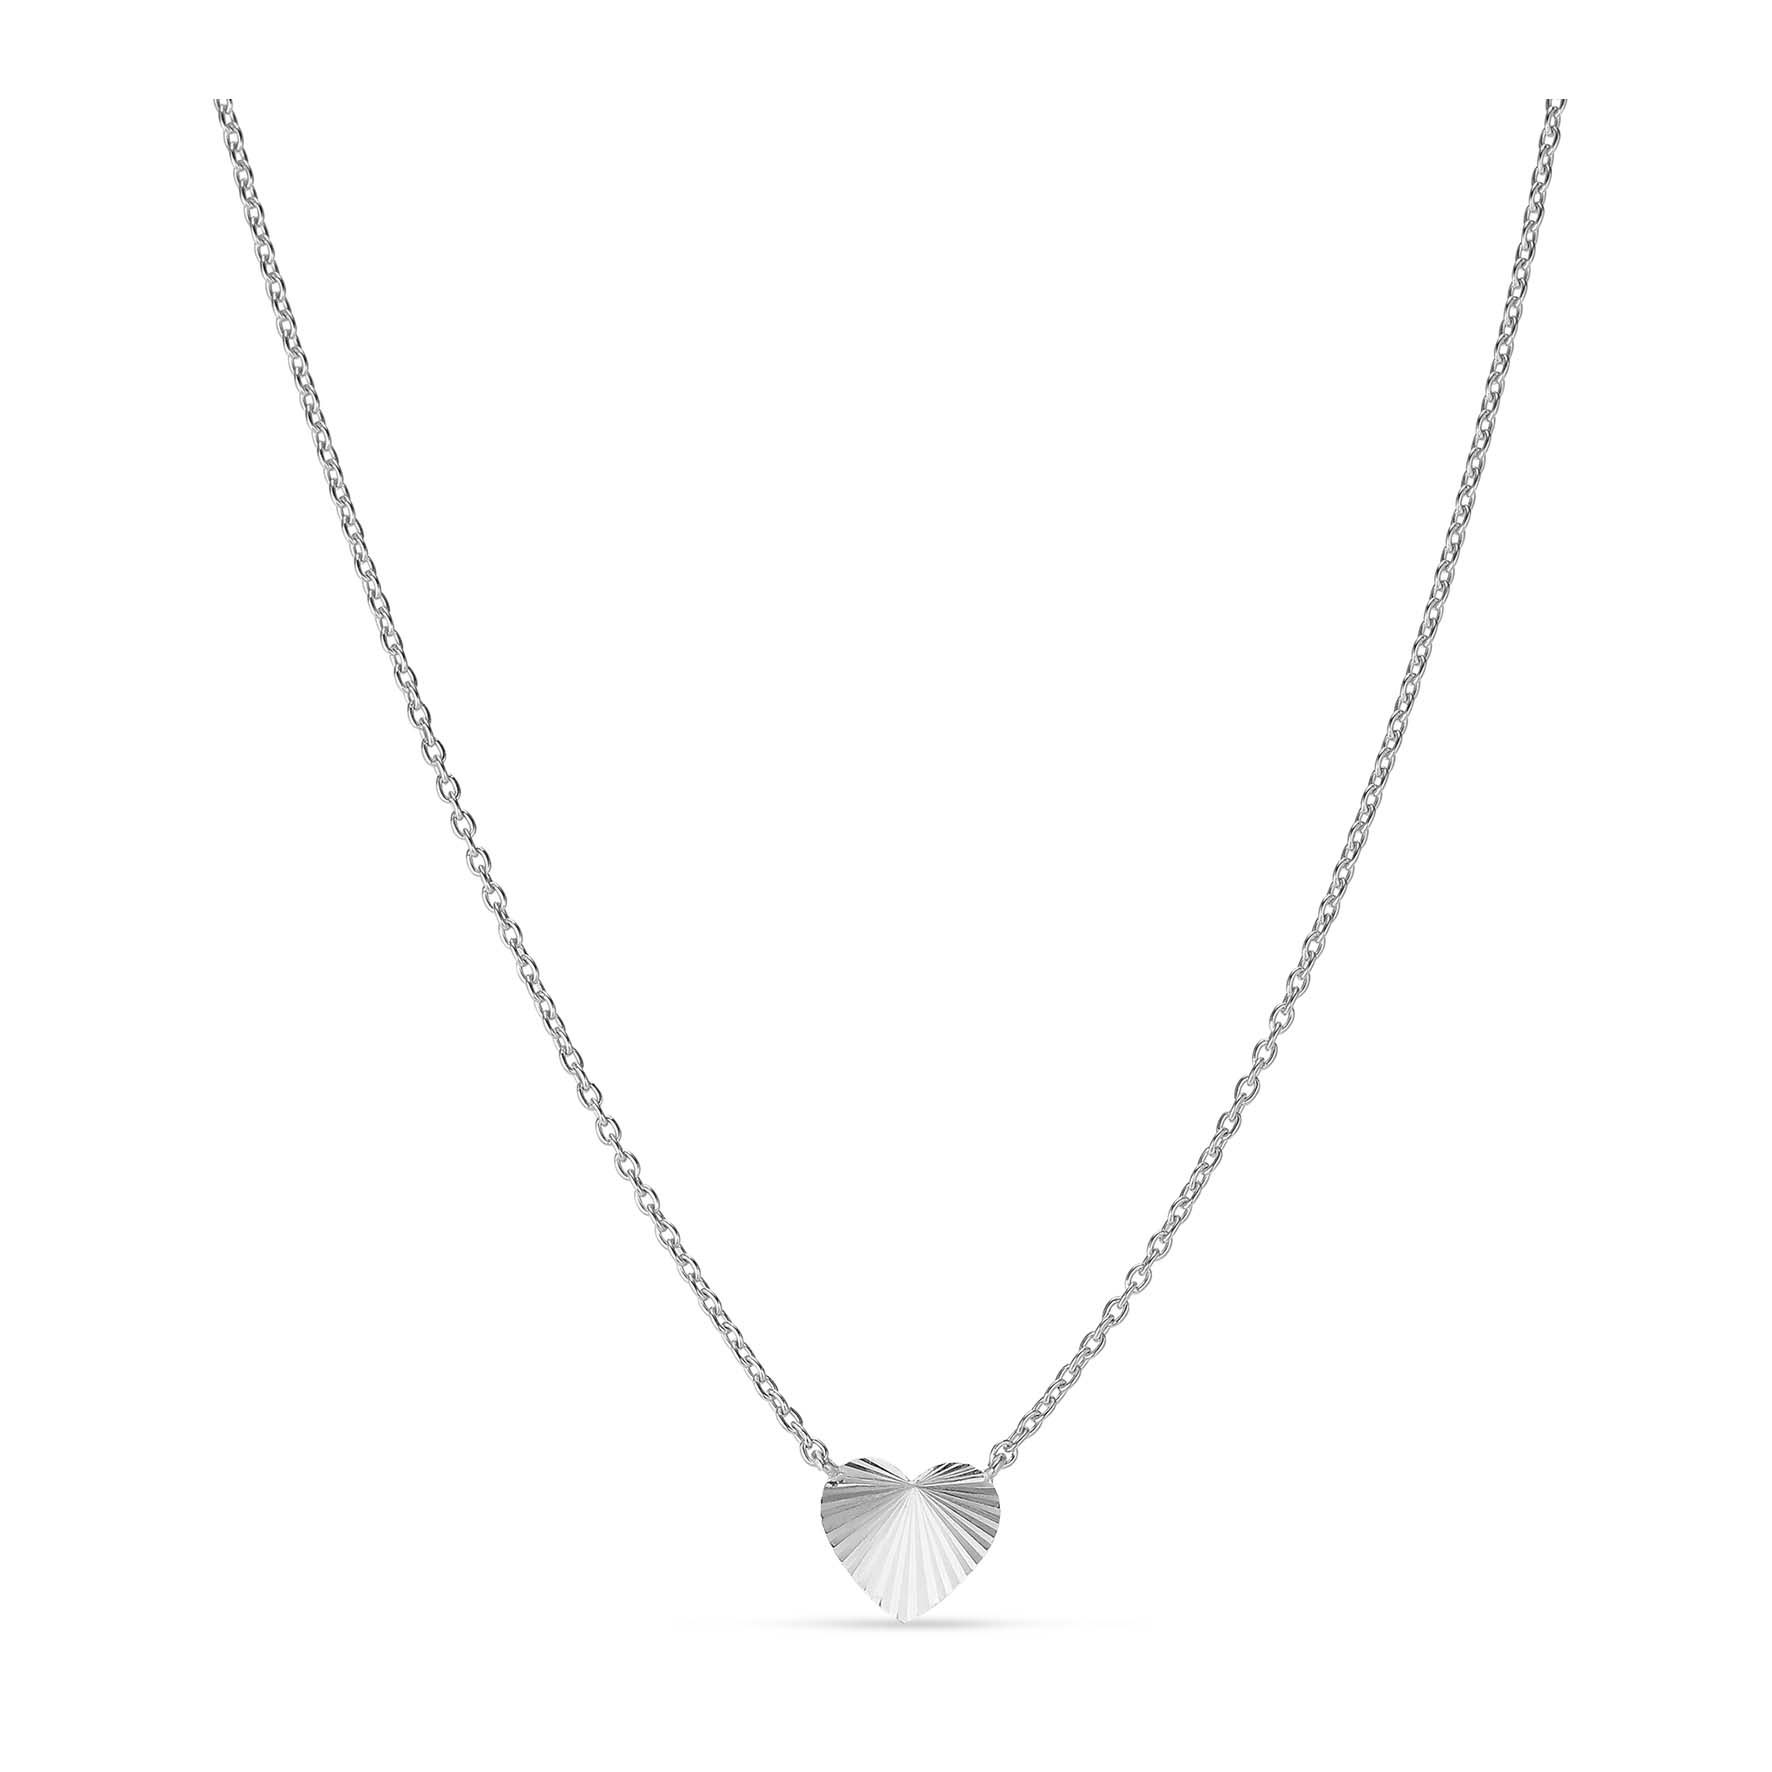 Reflection Heart Necklace fra Jane Kønig i Sølv Sterling 925